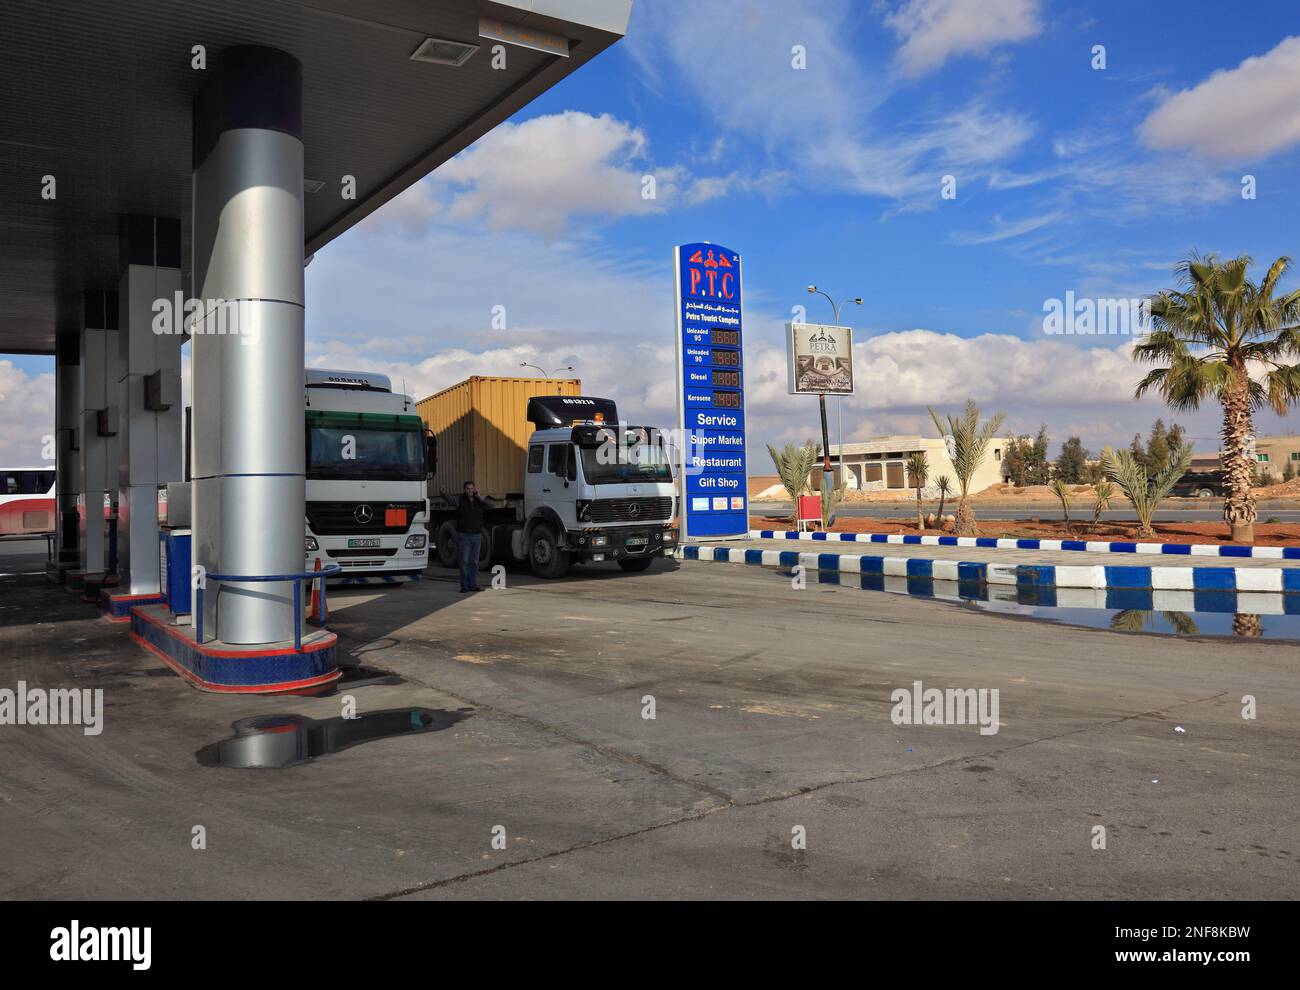 Tankstelle en Jordanien / station-service en Jordanie Banque D'Images